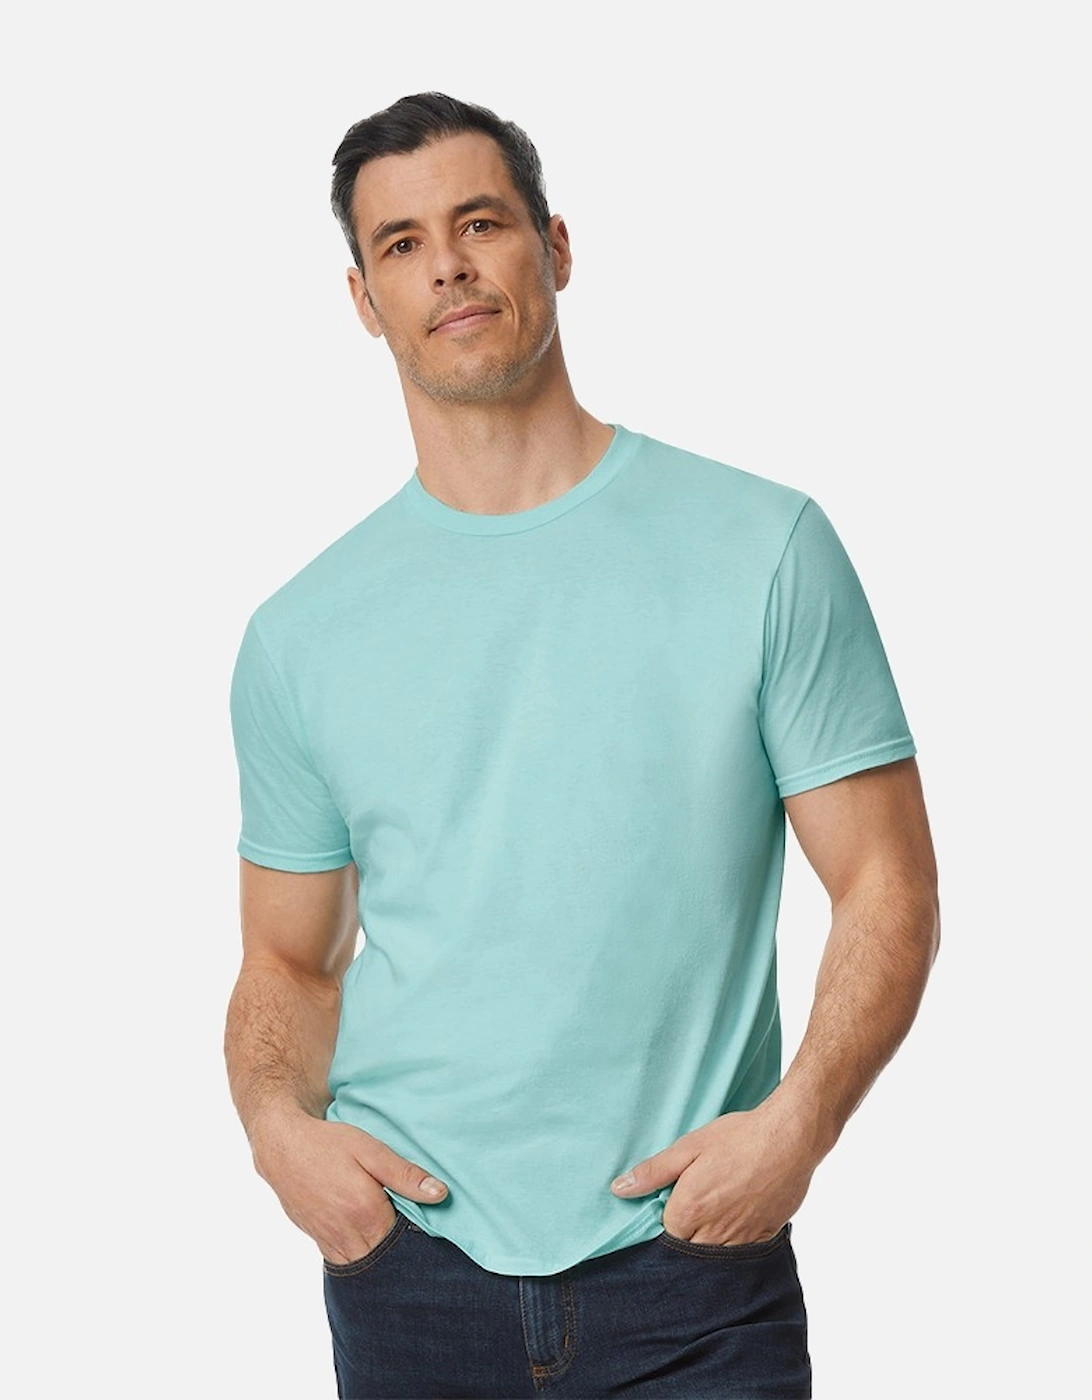 Unisex Adult Enzyme Washed T-Shirt